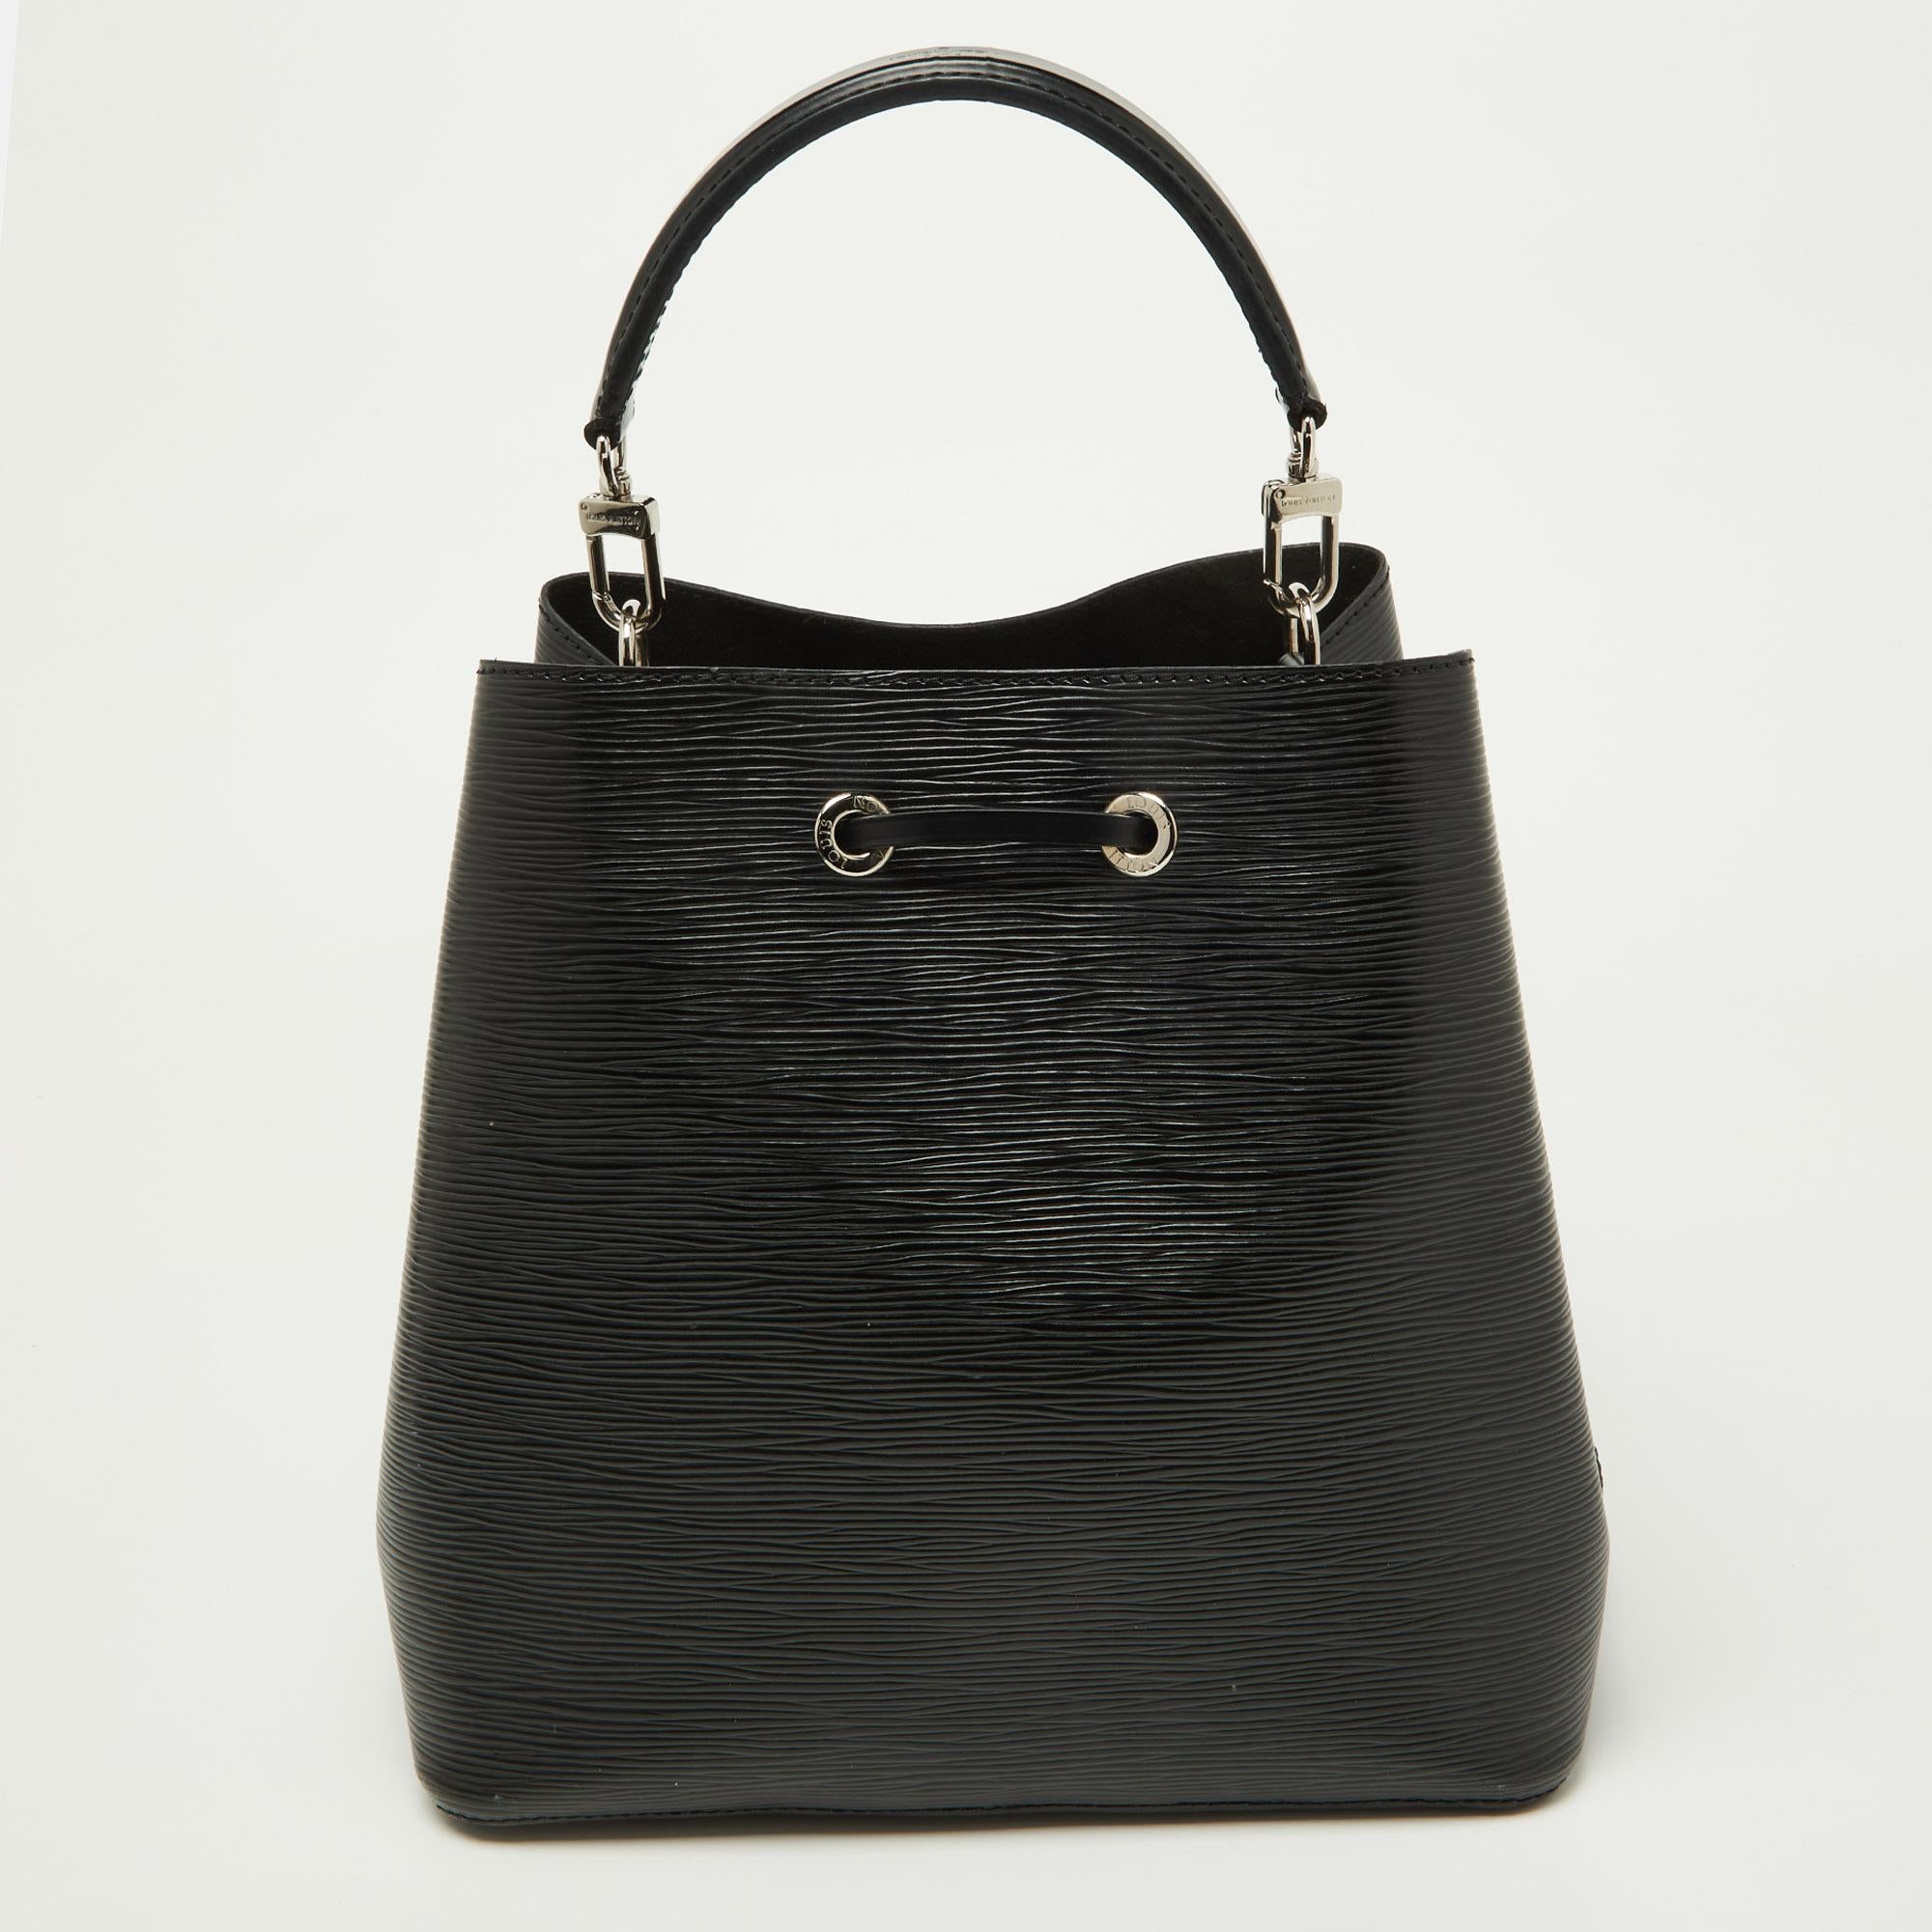 Ce joli sac Louis Vuitton est une version modernisée du sac classique Noé. Avec un design minimal mais des éléments marquants, il remportera votre vote en tant que sac à main préféré. Réalisé en cuir Epi dans une teinte noire, il est doté d'une